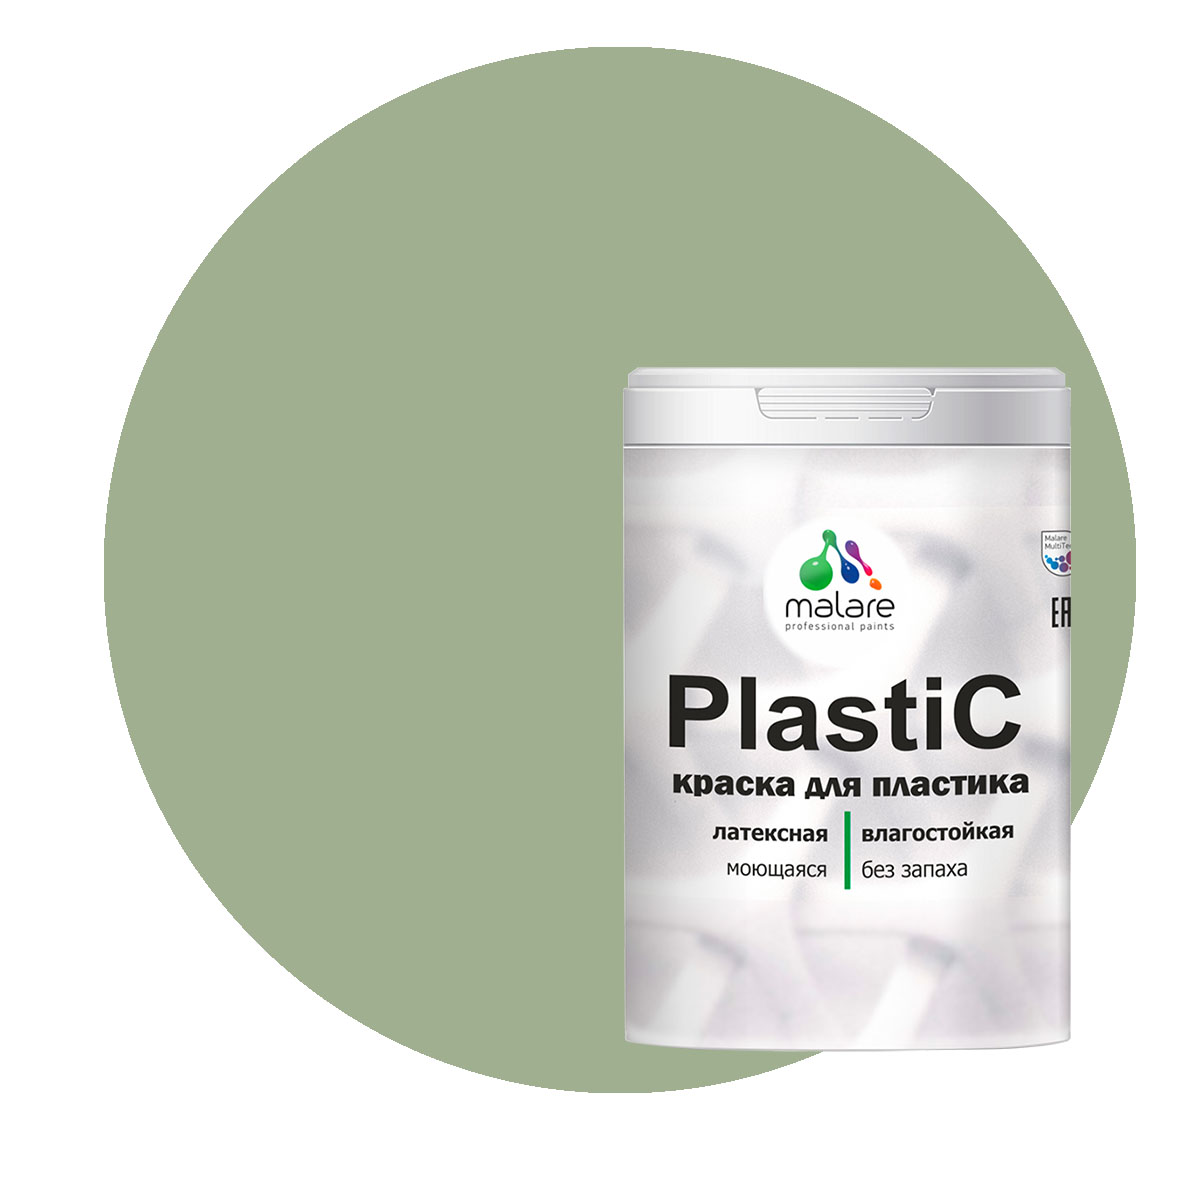 Краска Malare PlastiC для пластика, ПВХ, для сайдинга, лиственный зеленый, 1 кг.